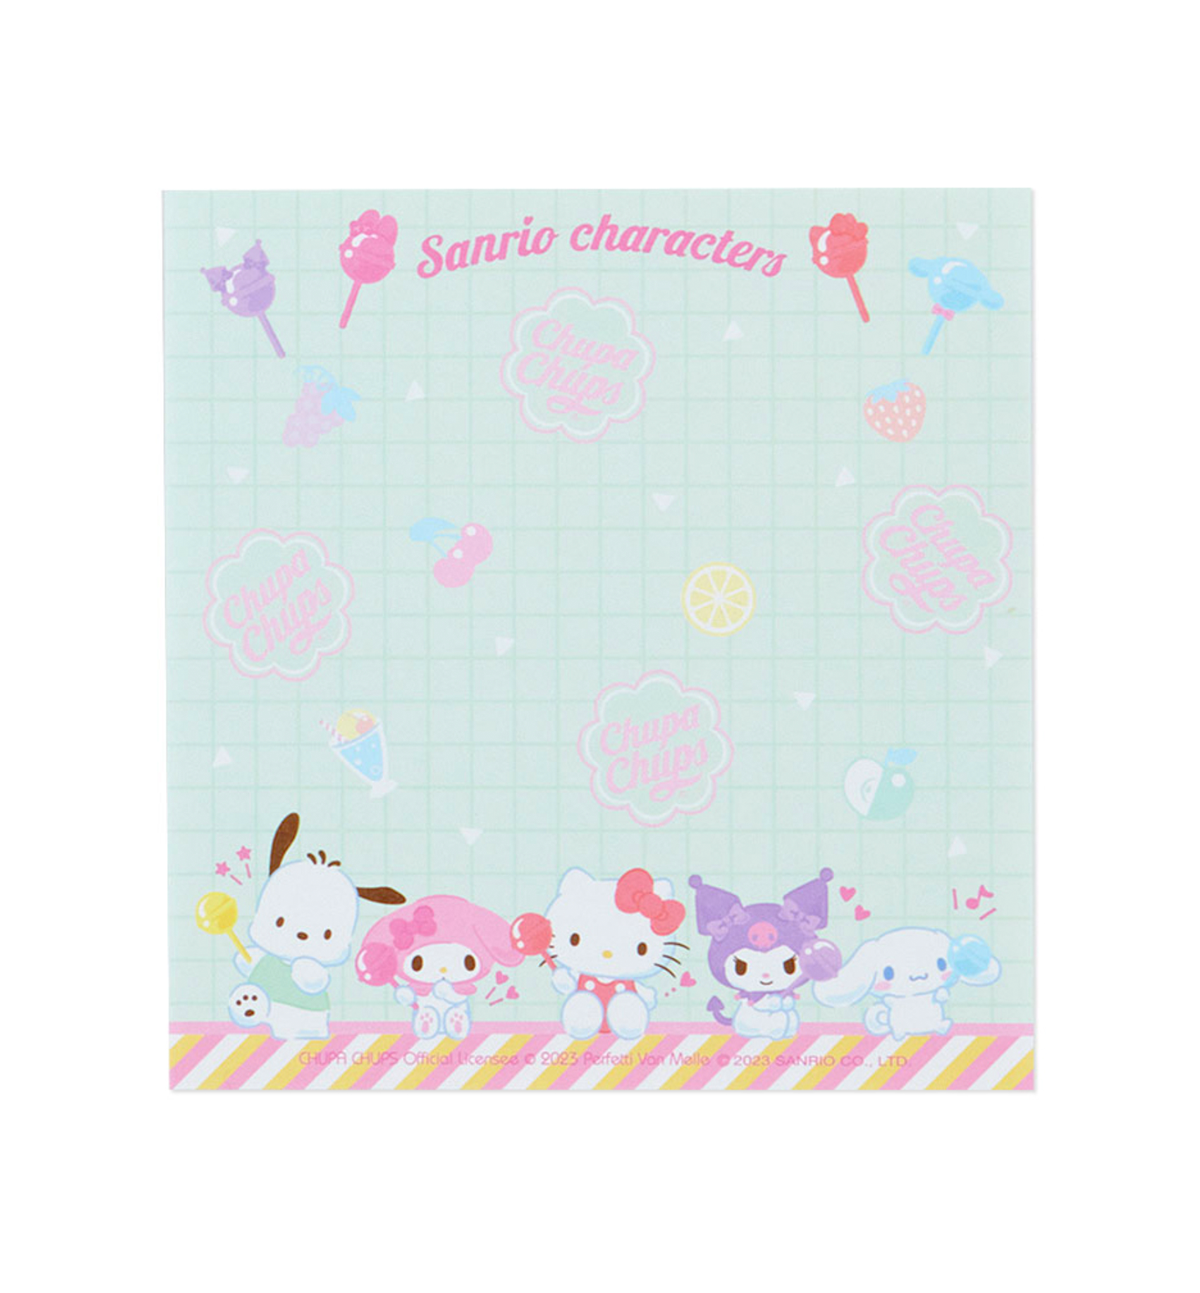 Sanrio Characters & Chupa Chups Memopad [Limited Edition]